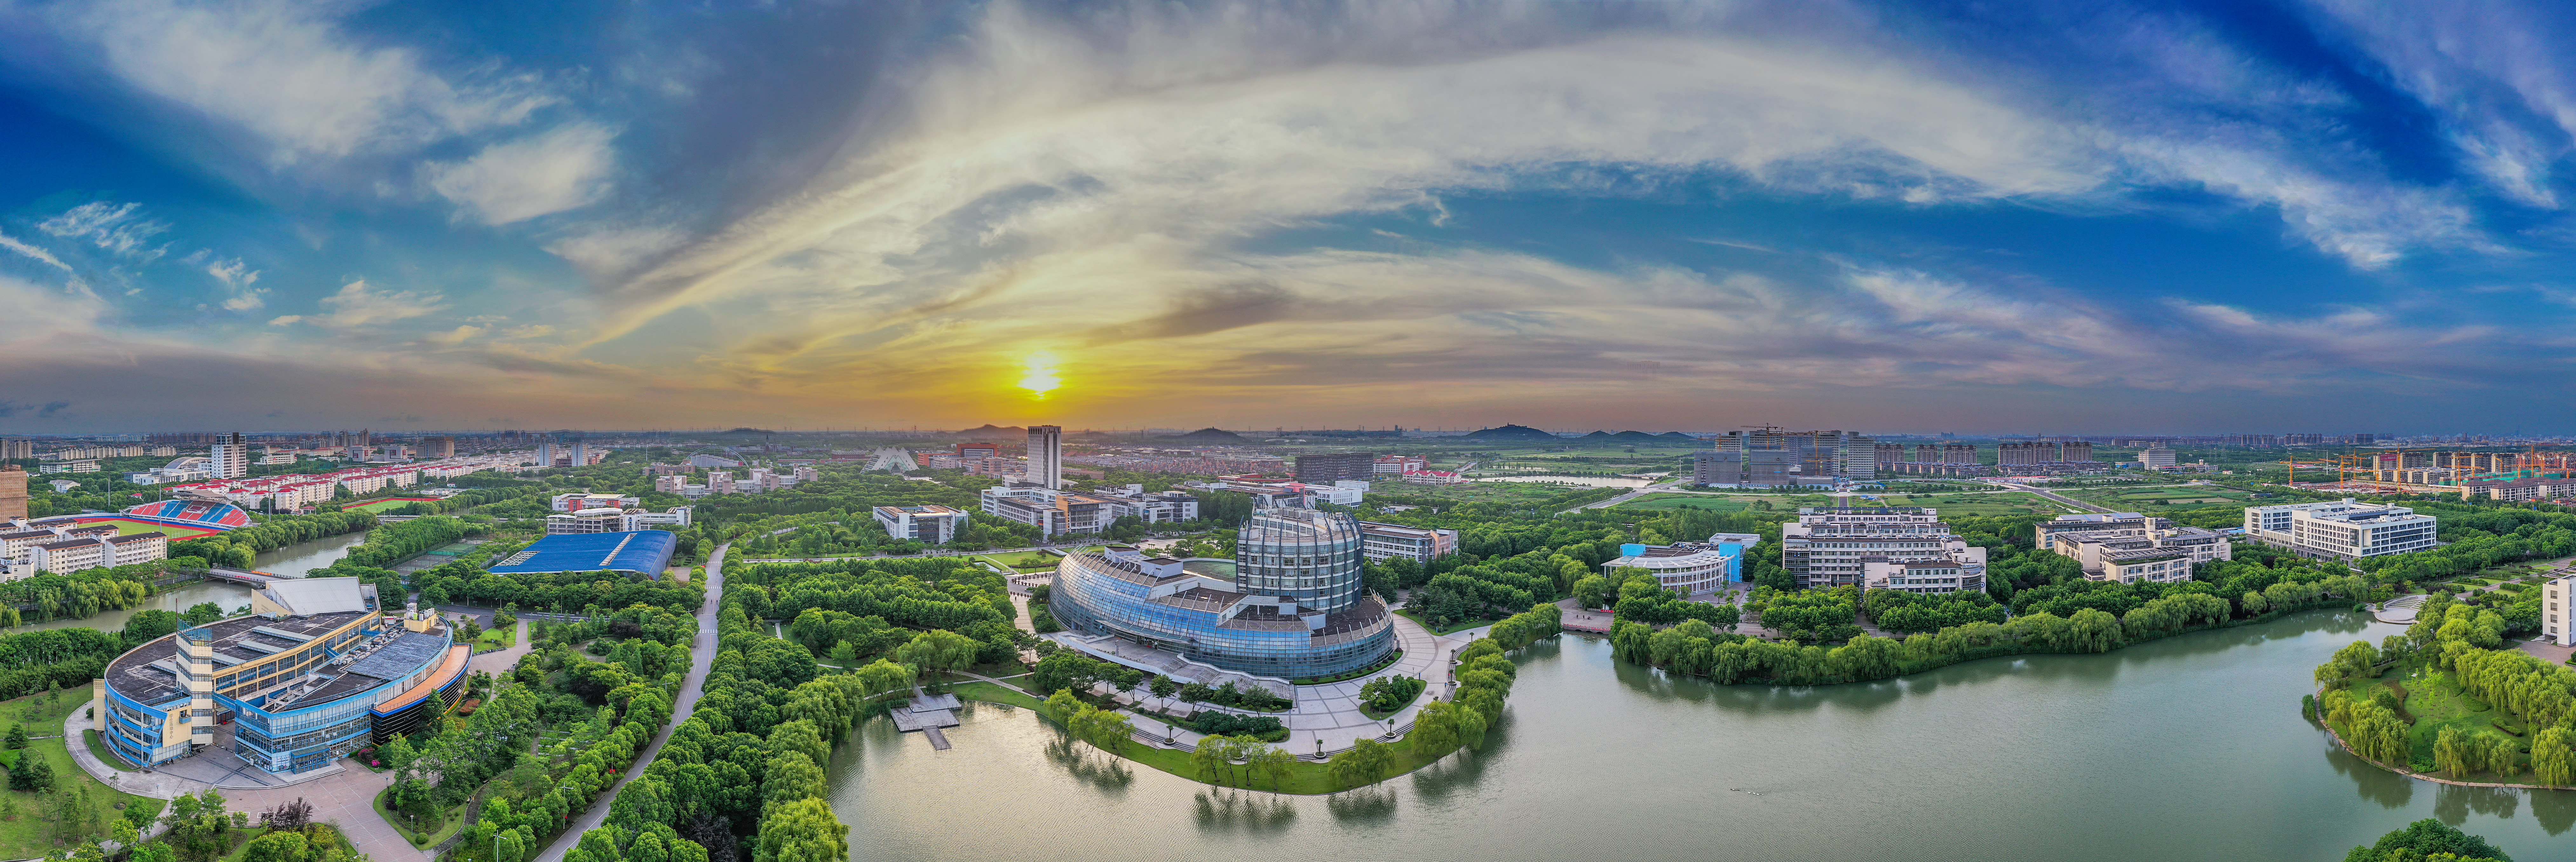 上海理工大学 风景图片